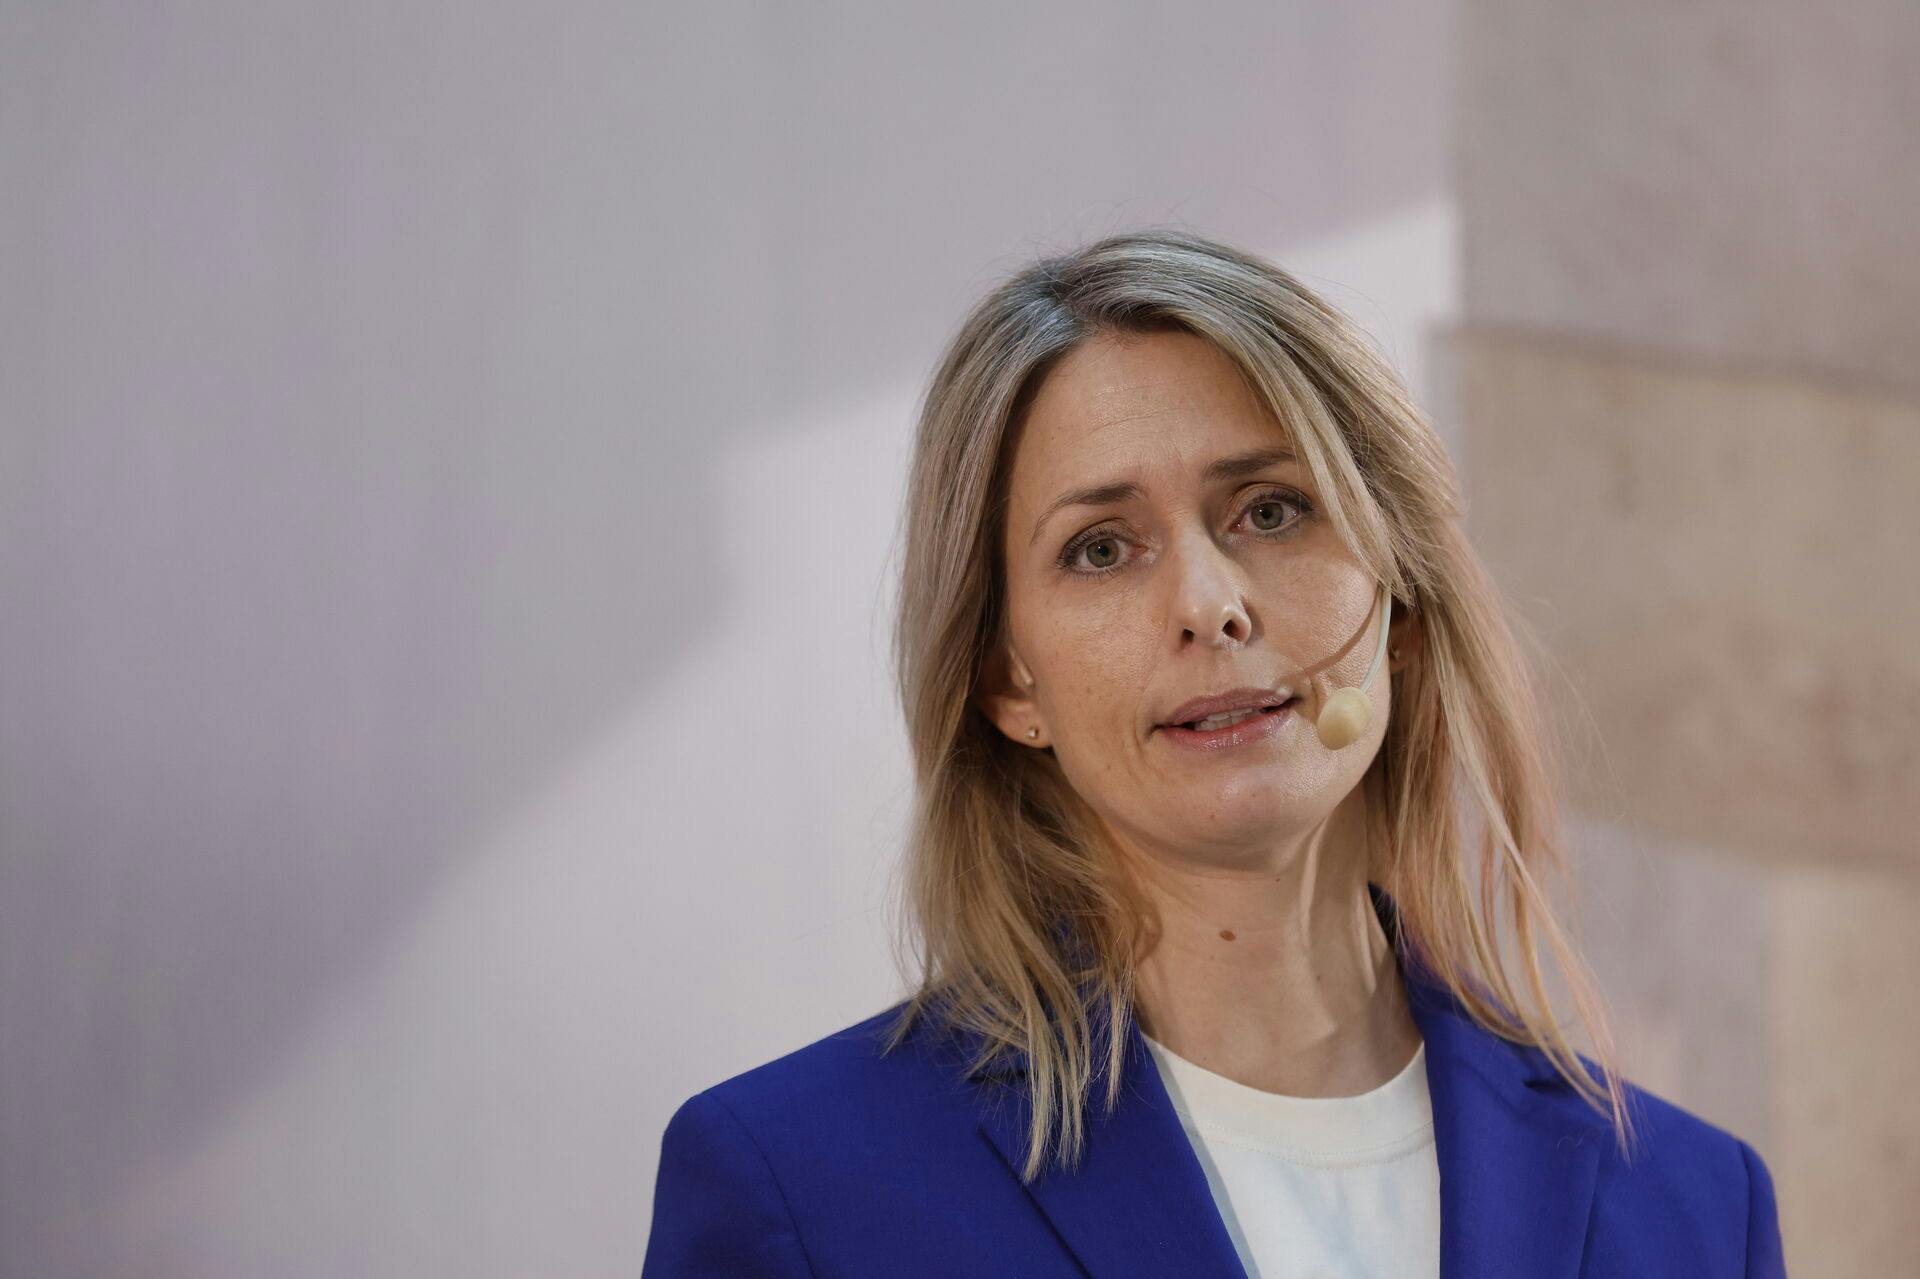 Helena Helmersson stopper som administrerende direktør for H&M.